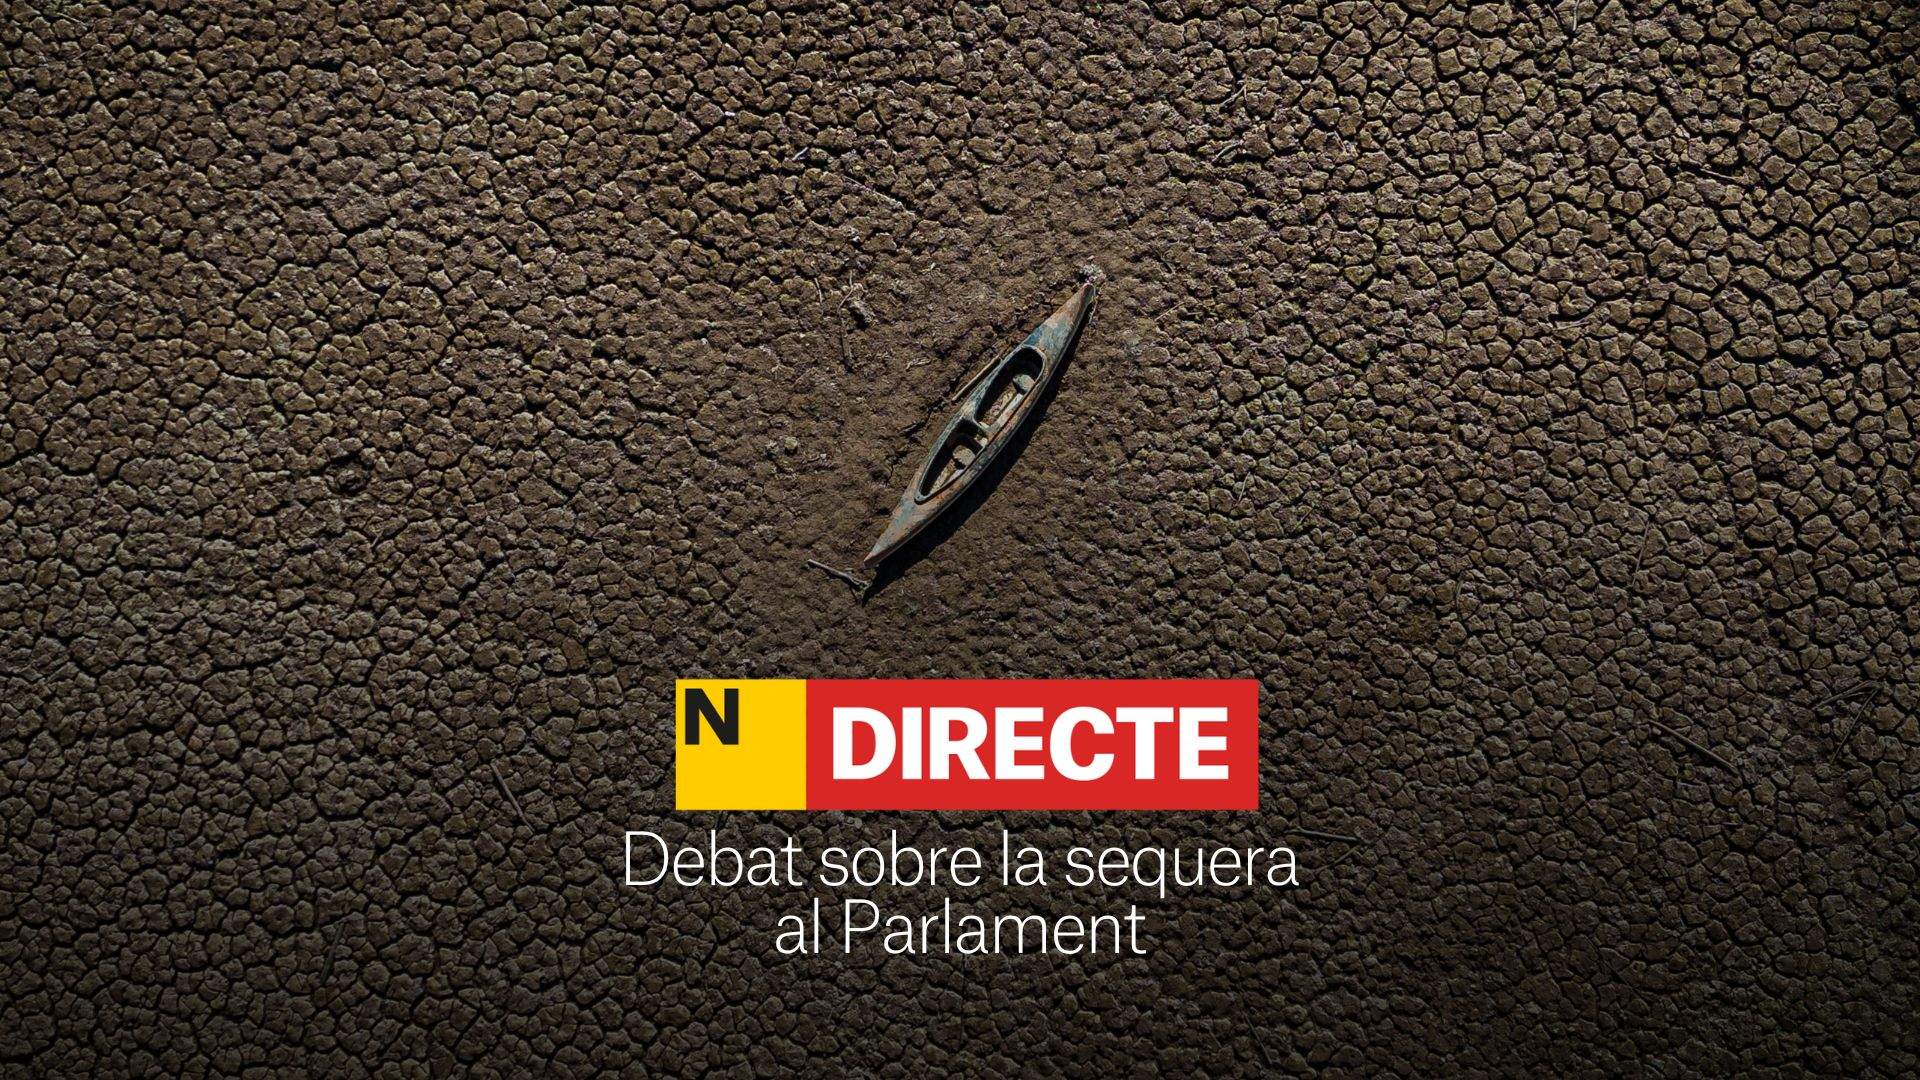 Debate sobre la sequía en el Parlament de Catalunya, DIRECTO